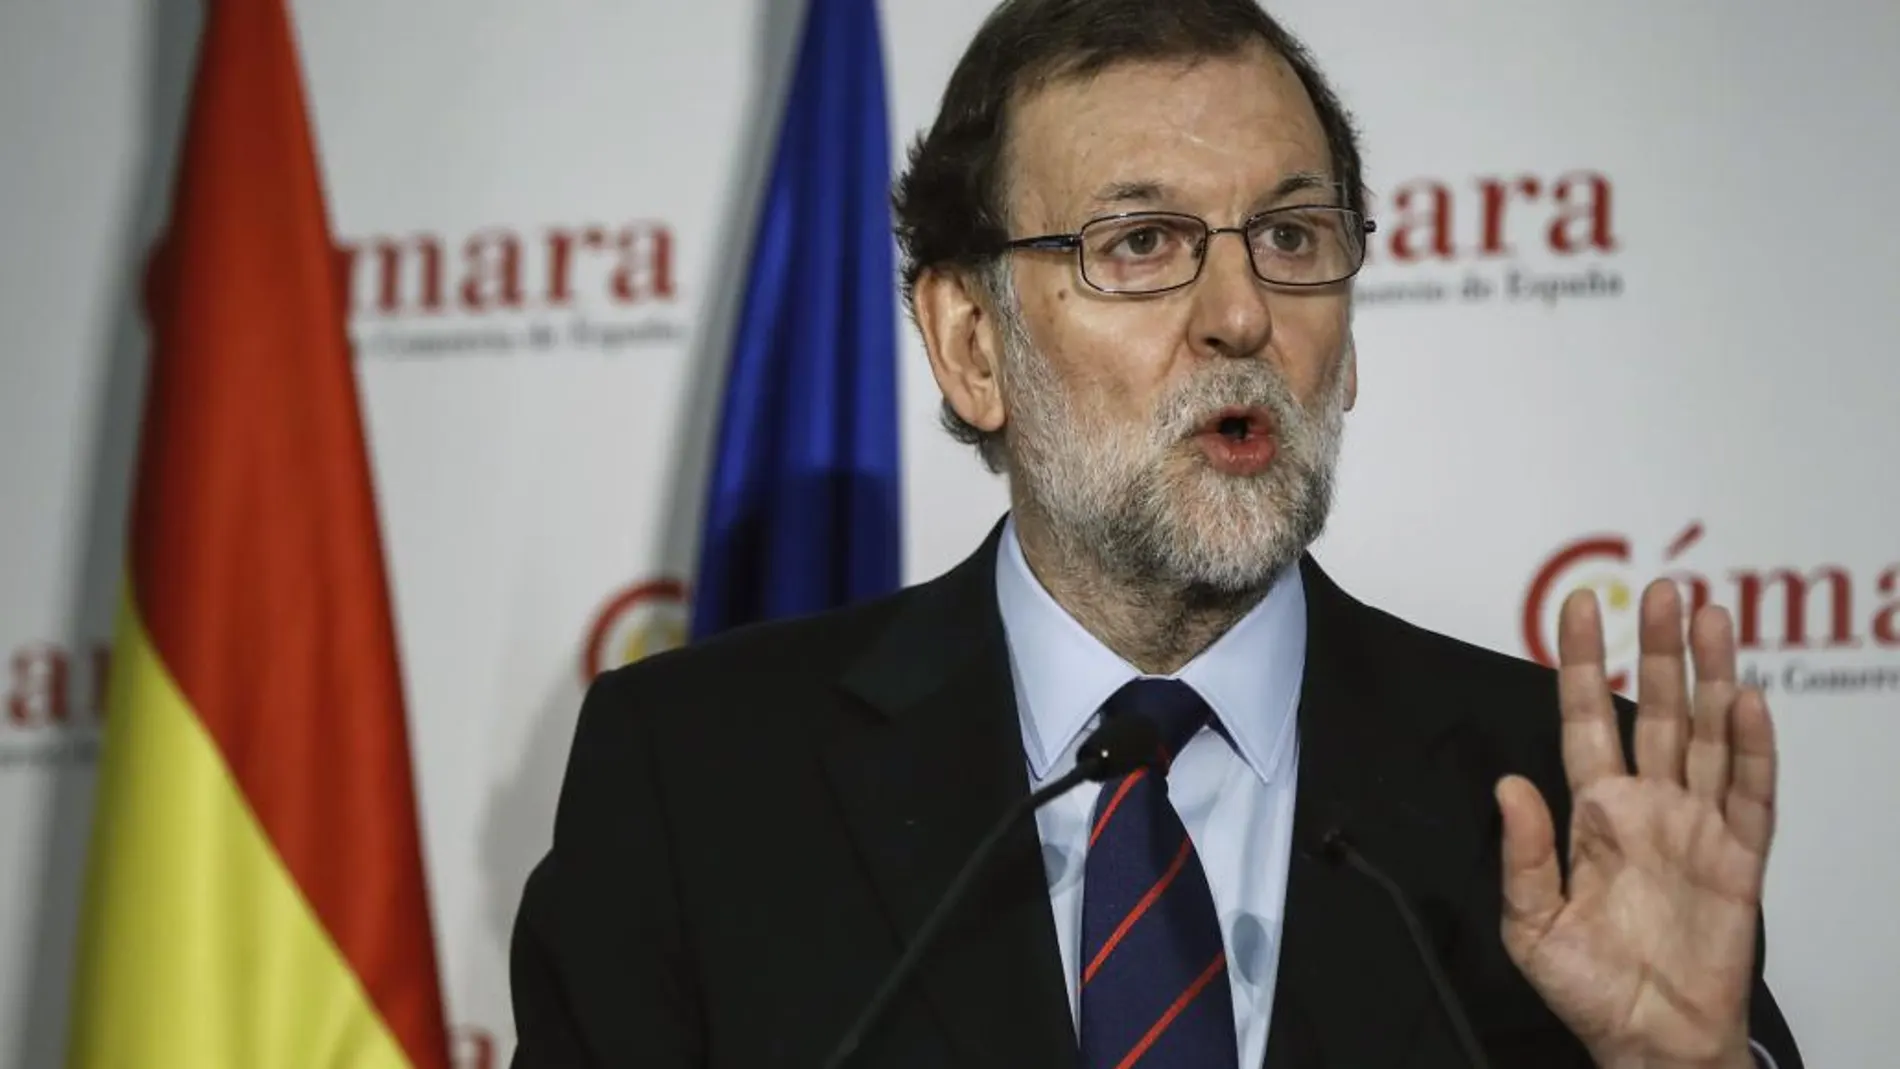 El presidente del Gobierno, Mariano Rajoy, durante su intervención en la inauguración de la jornada «Crecimiento empresarial y competitividad».